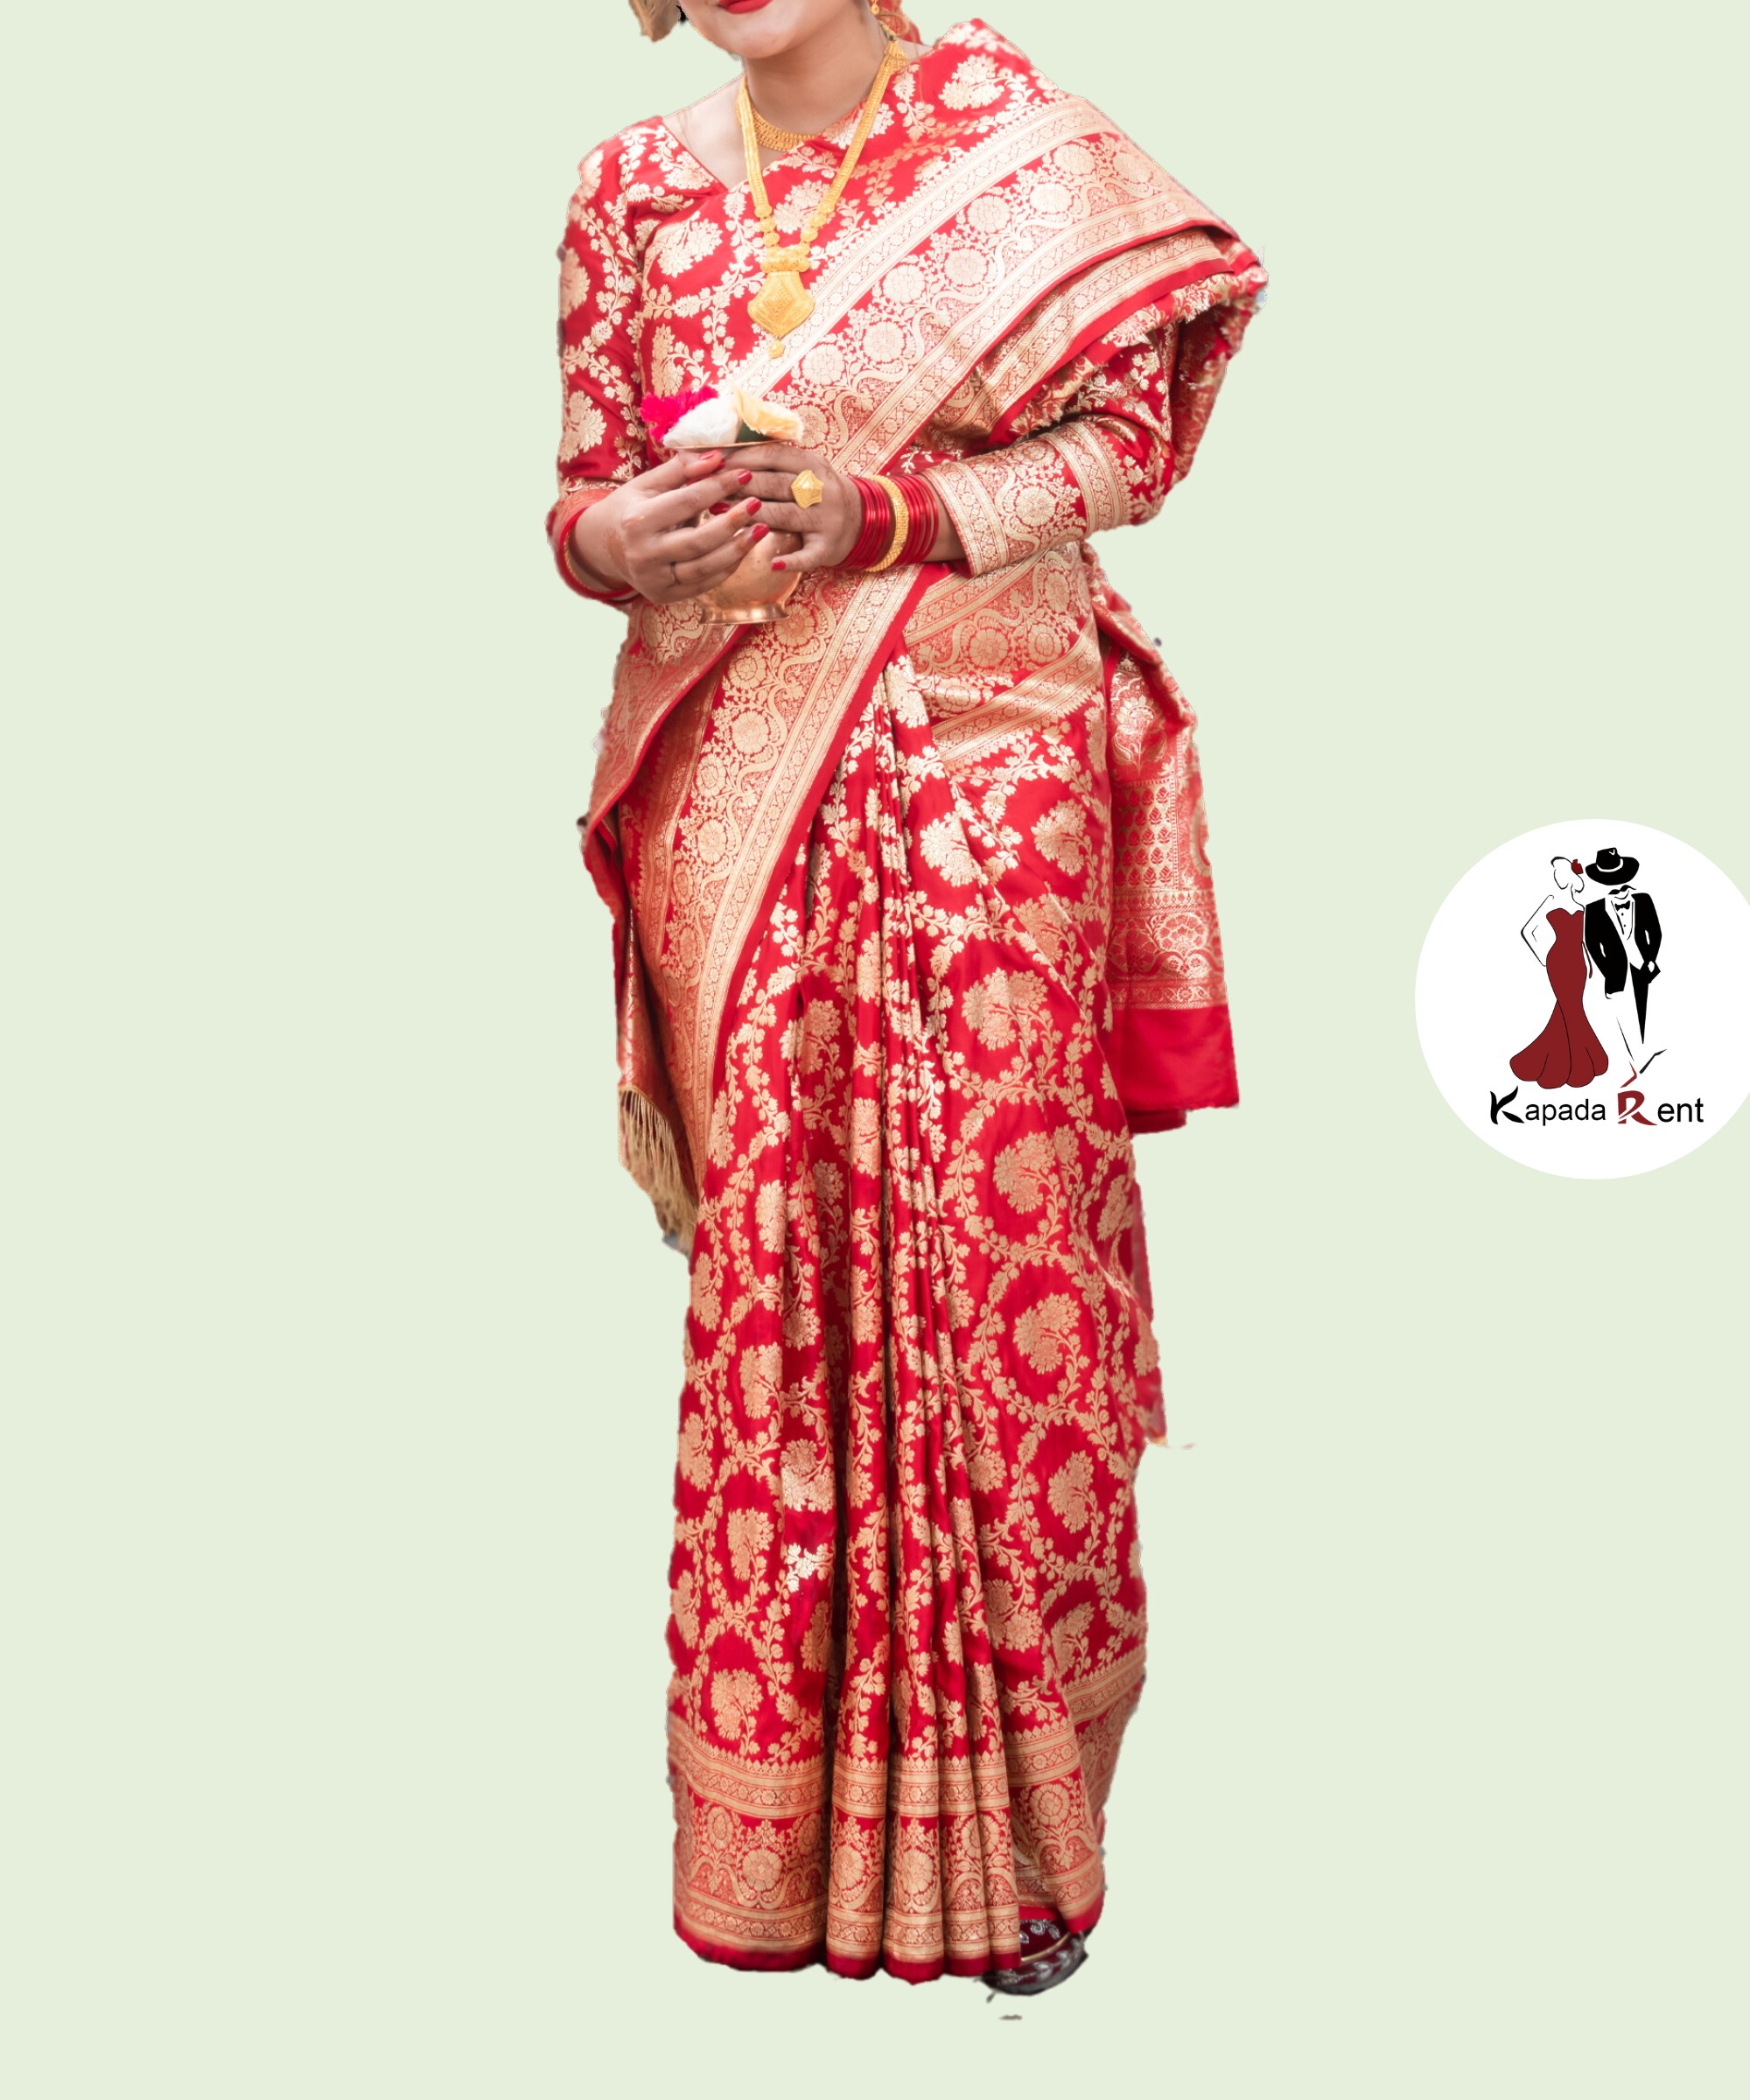 Golden Banarashi saree set on light red